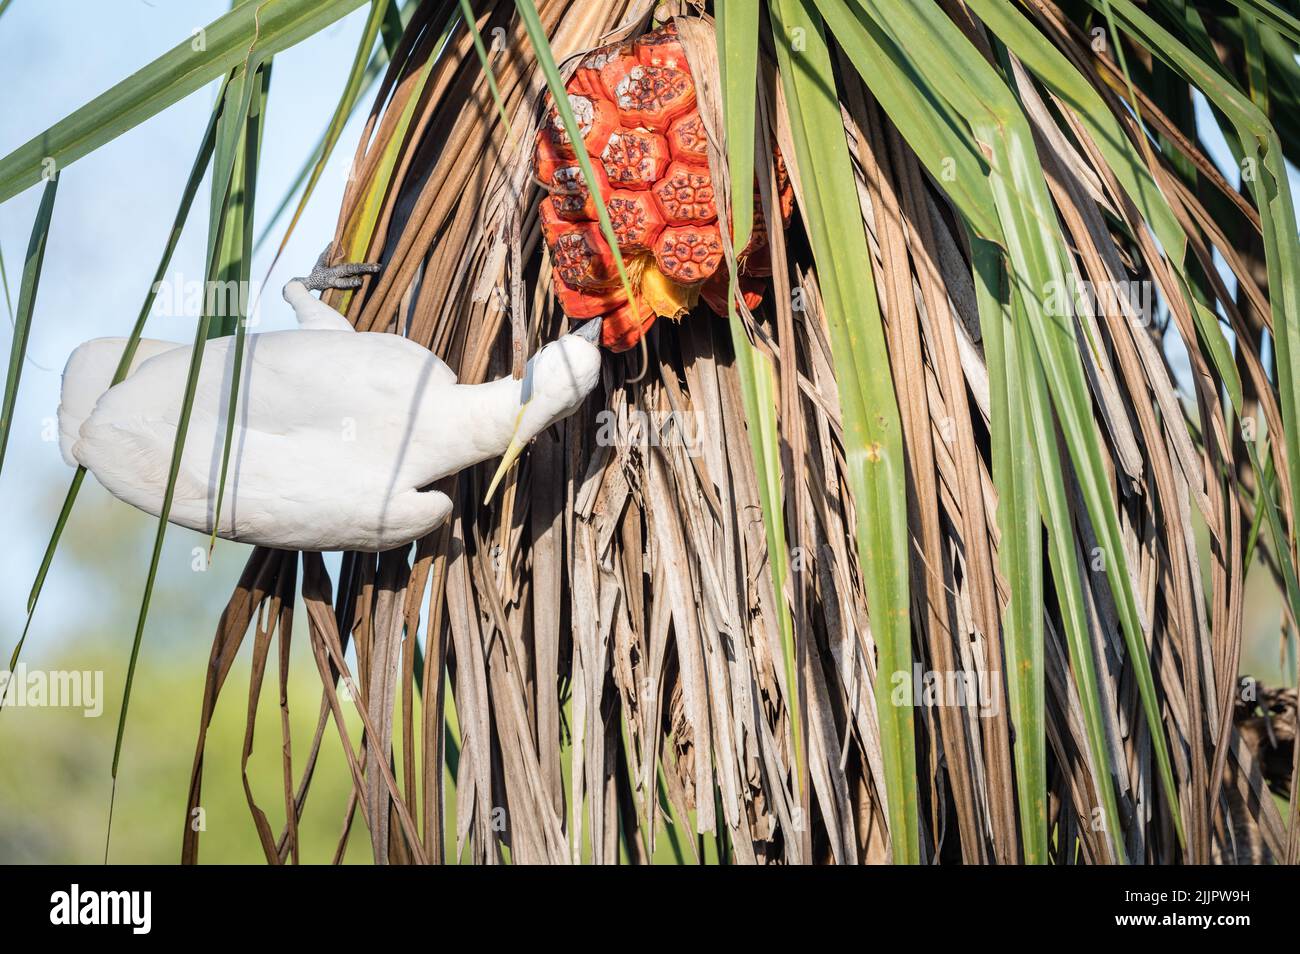 Un unico cockatoo solforato che si nutre di noci su una palma di pananus a Nhulynbuy, nella penisola di Gove, nel territorio settentrionale dell'Australia. Foto Stock